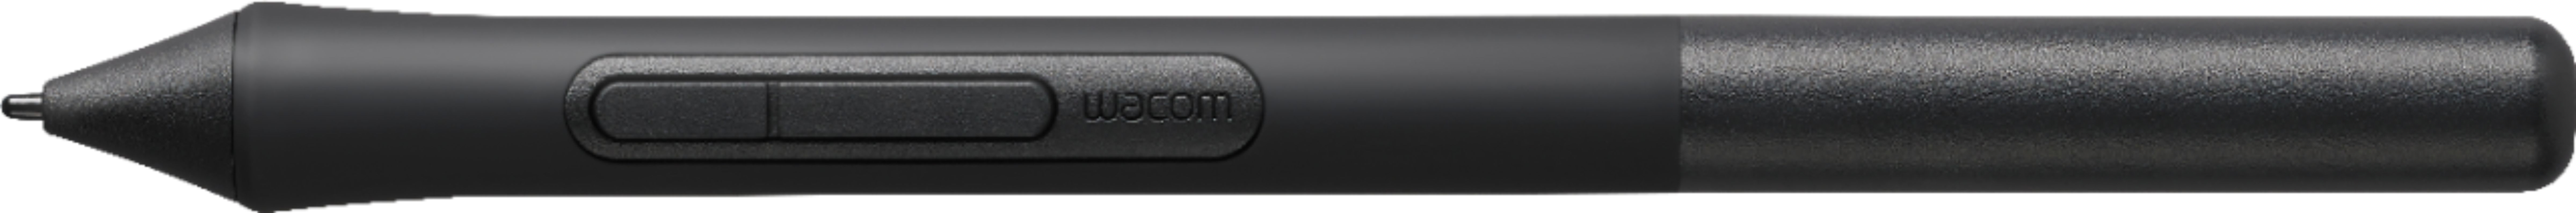 Wacom Intuos 4K Pen